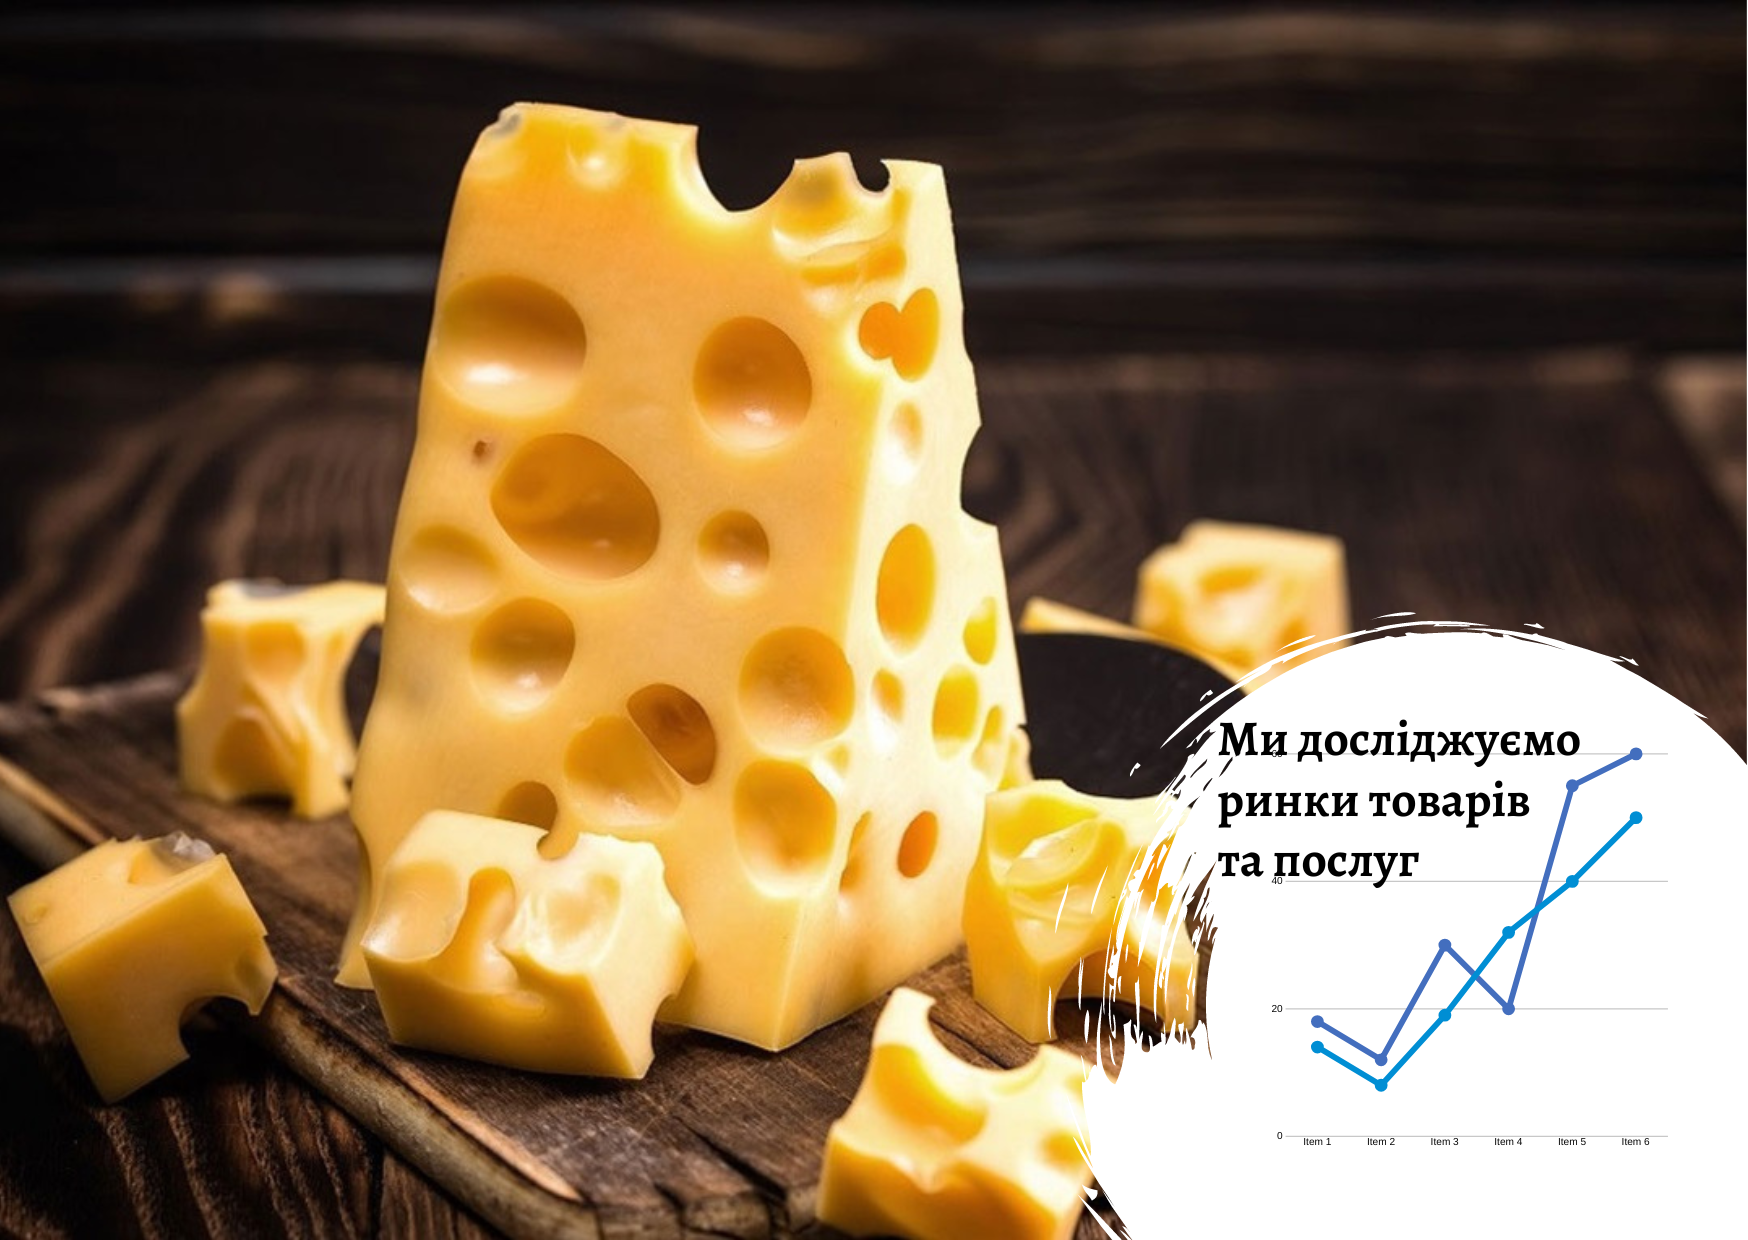 Рынок сыра в Украине: курс на расширение ассортимента 